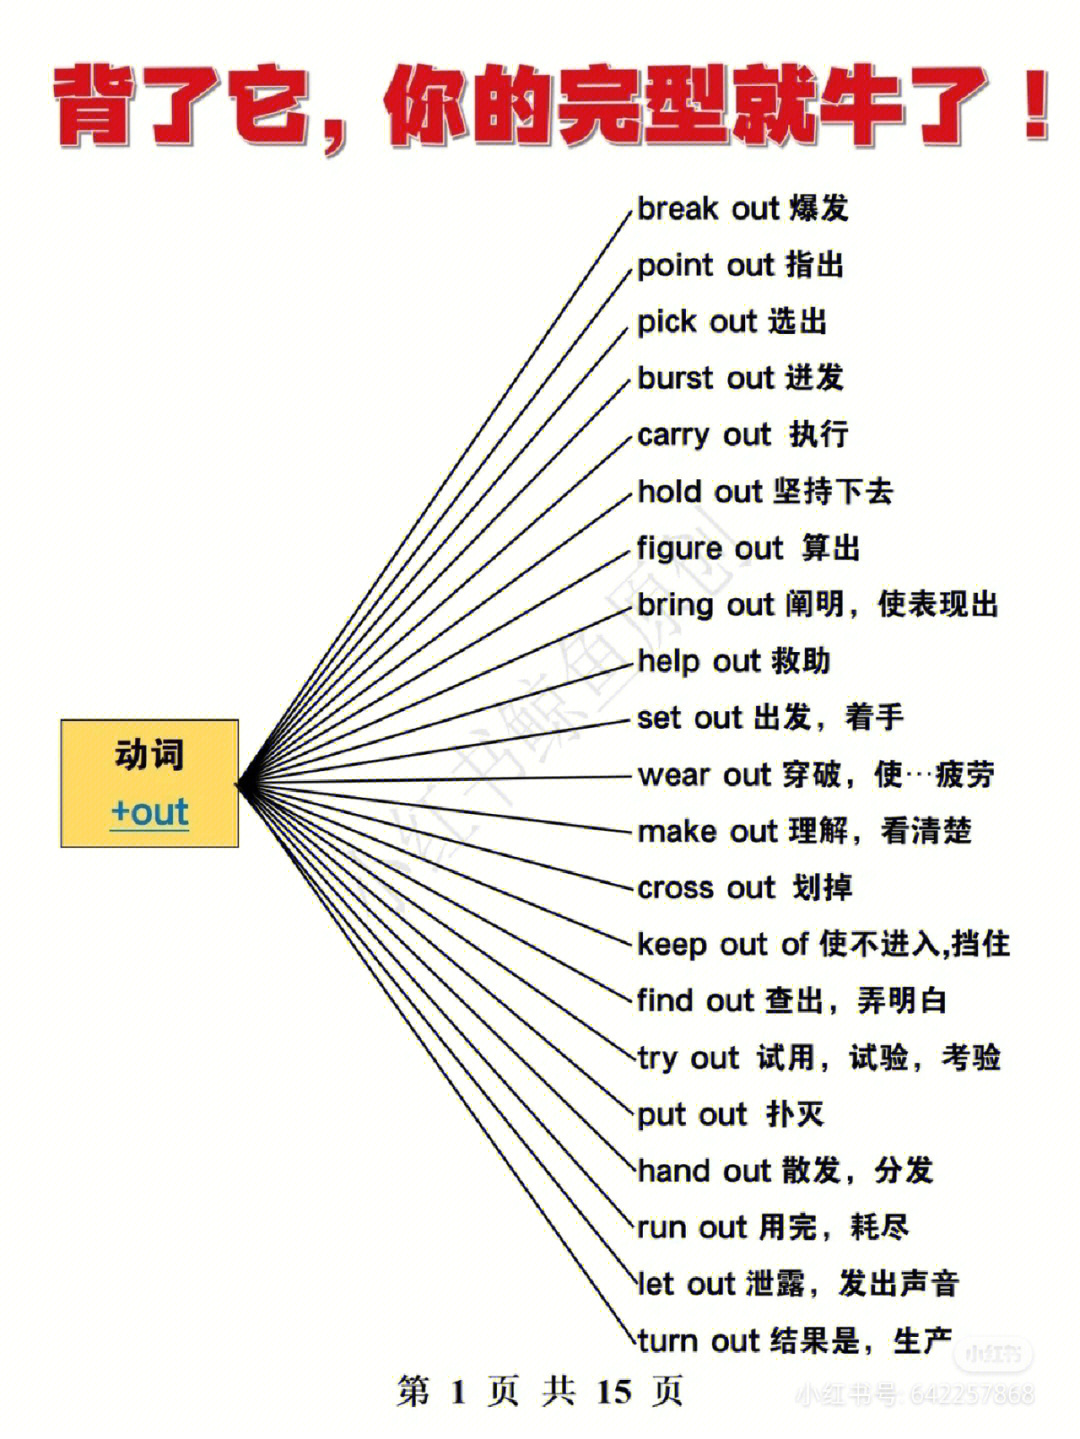 英语动词分类结构图图片